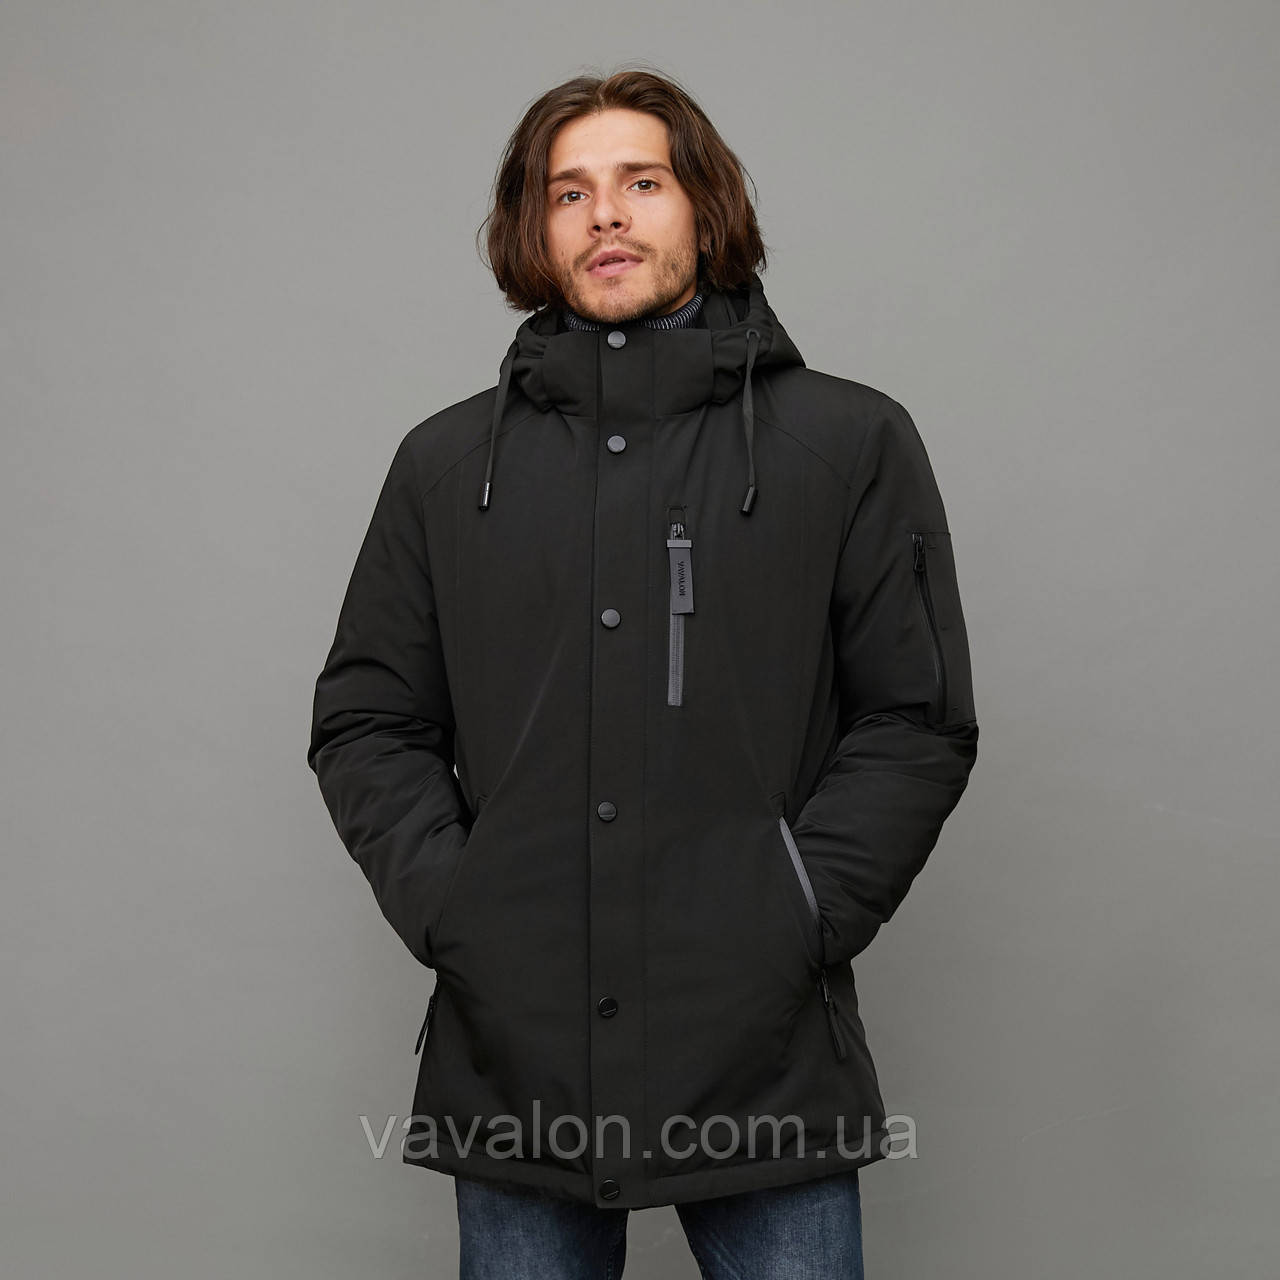 Зимова чоловіча куртка Vavalon KZ-2003 Black